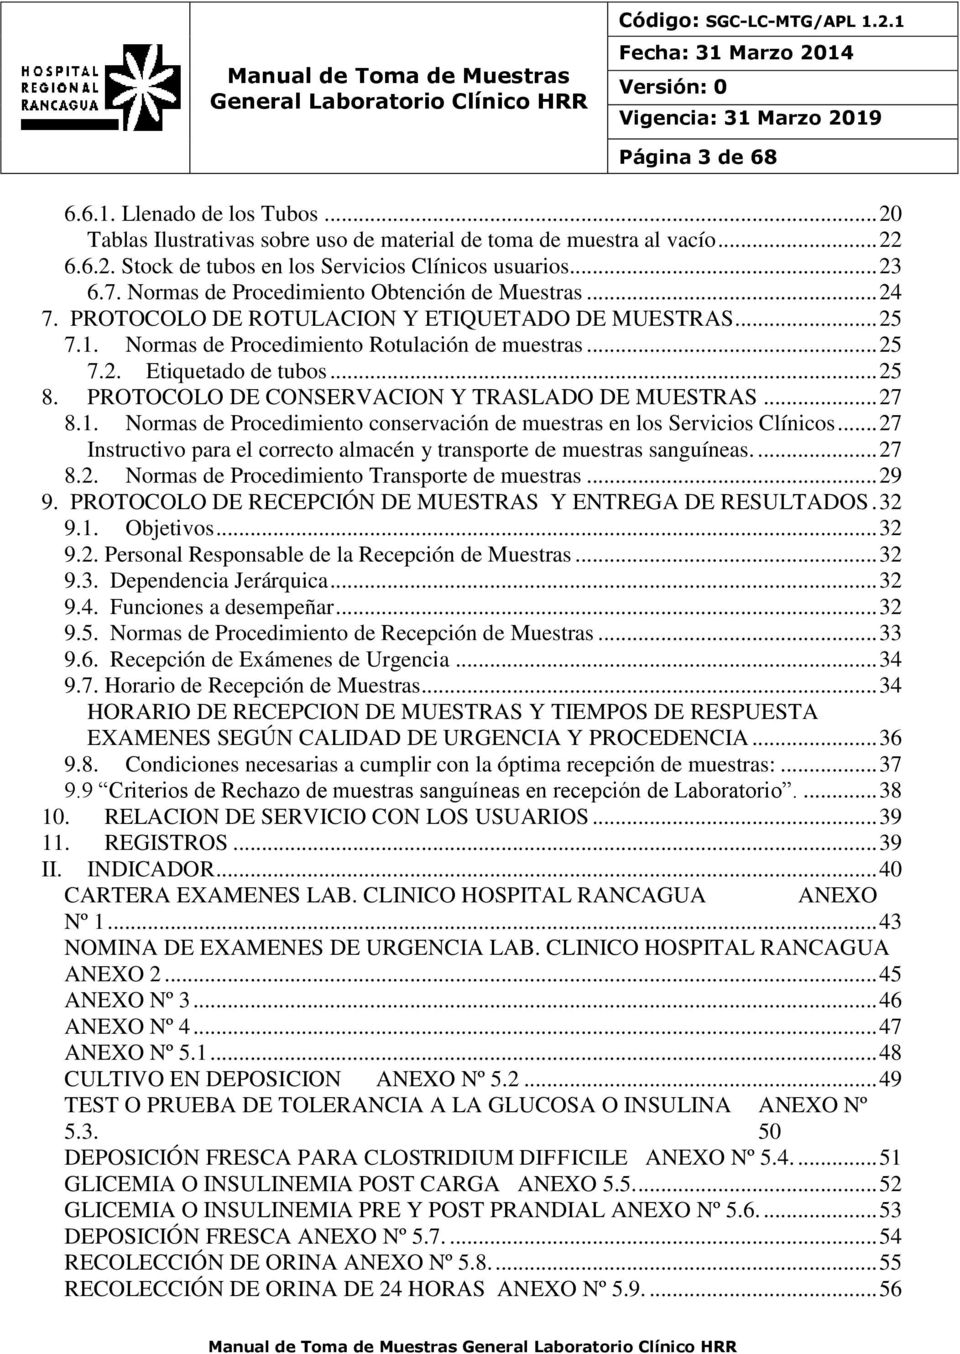 PROTOCOLO DE CONSERVACION Y TRASLADO DE MUESTRAS... 27 8.1. Normas de Procedimiento conservación de muestras en los Servicios Clínicos.